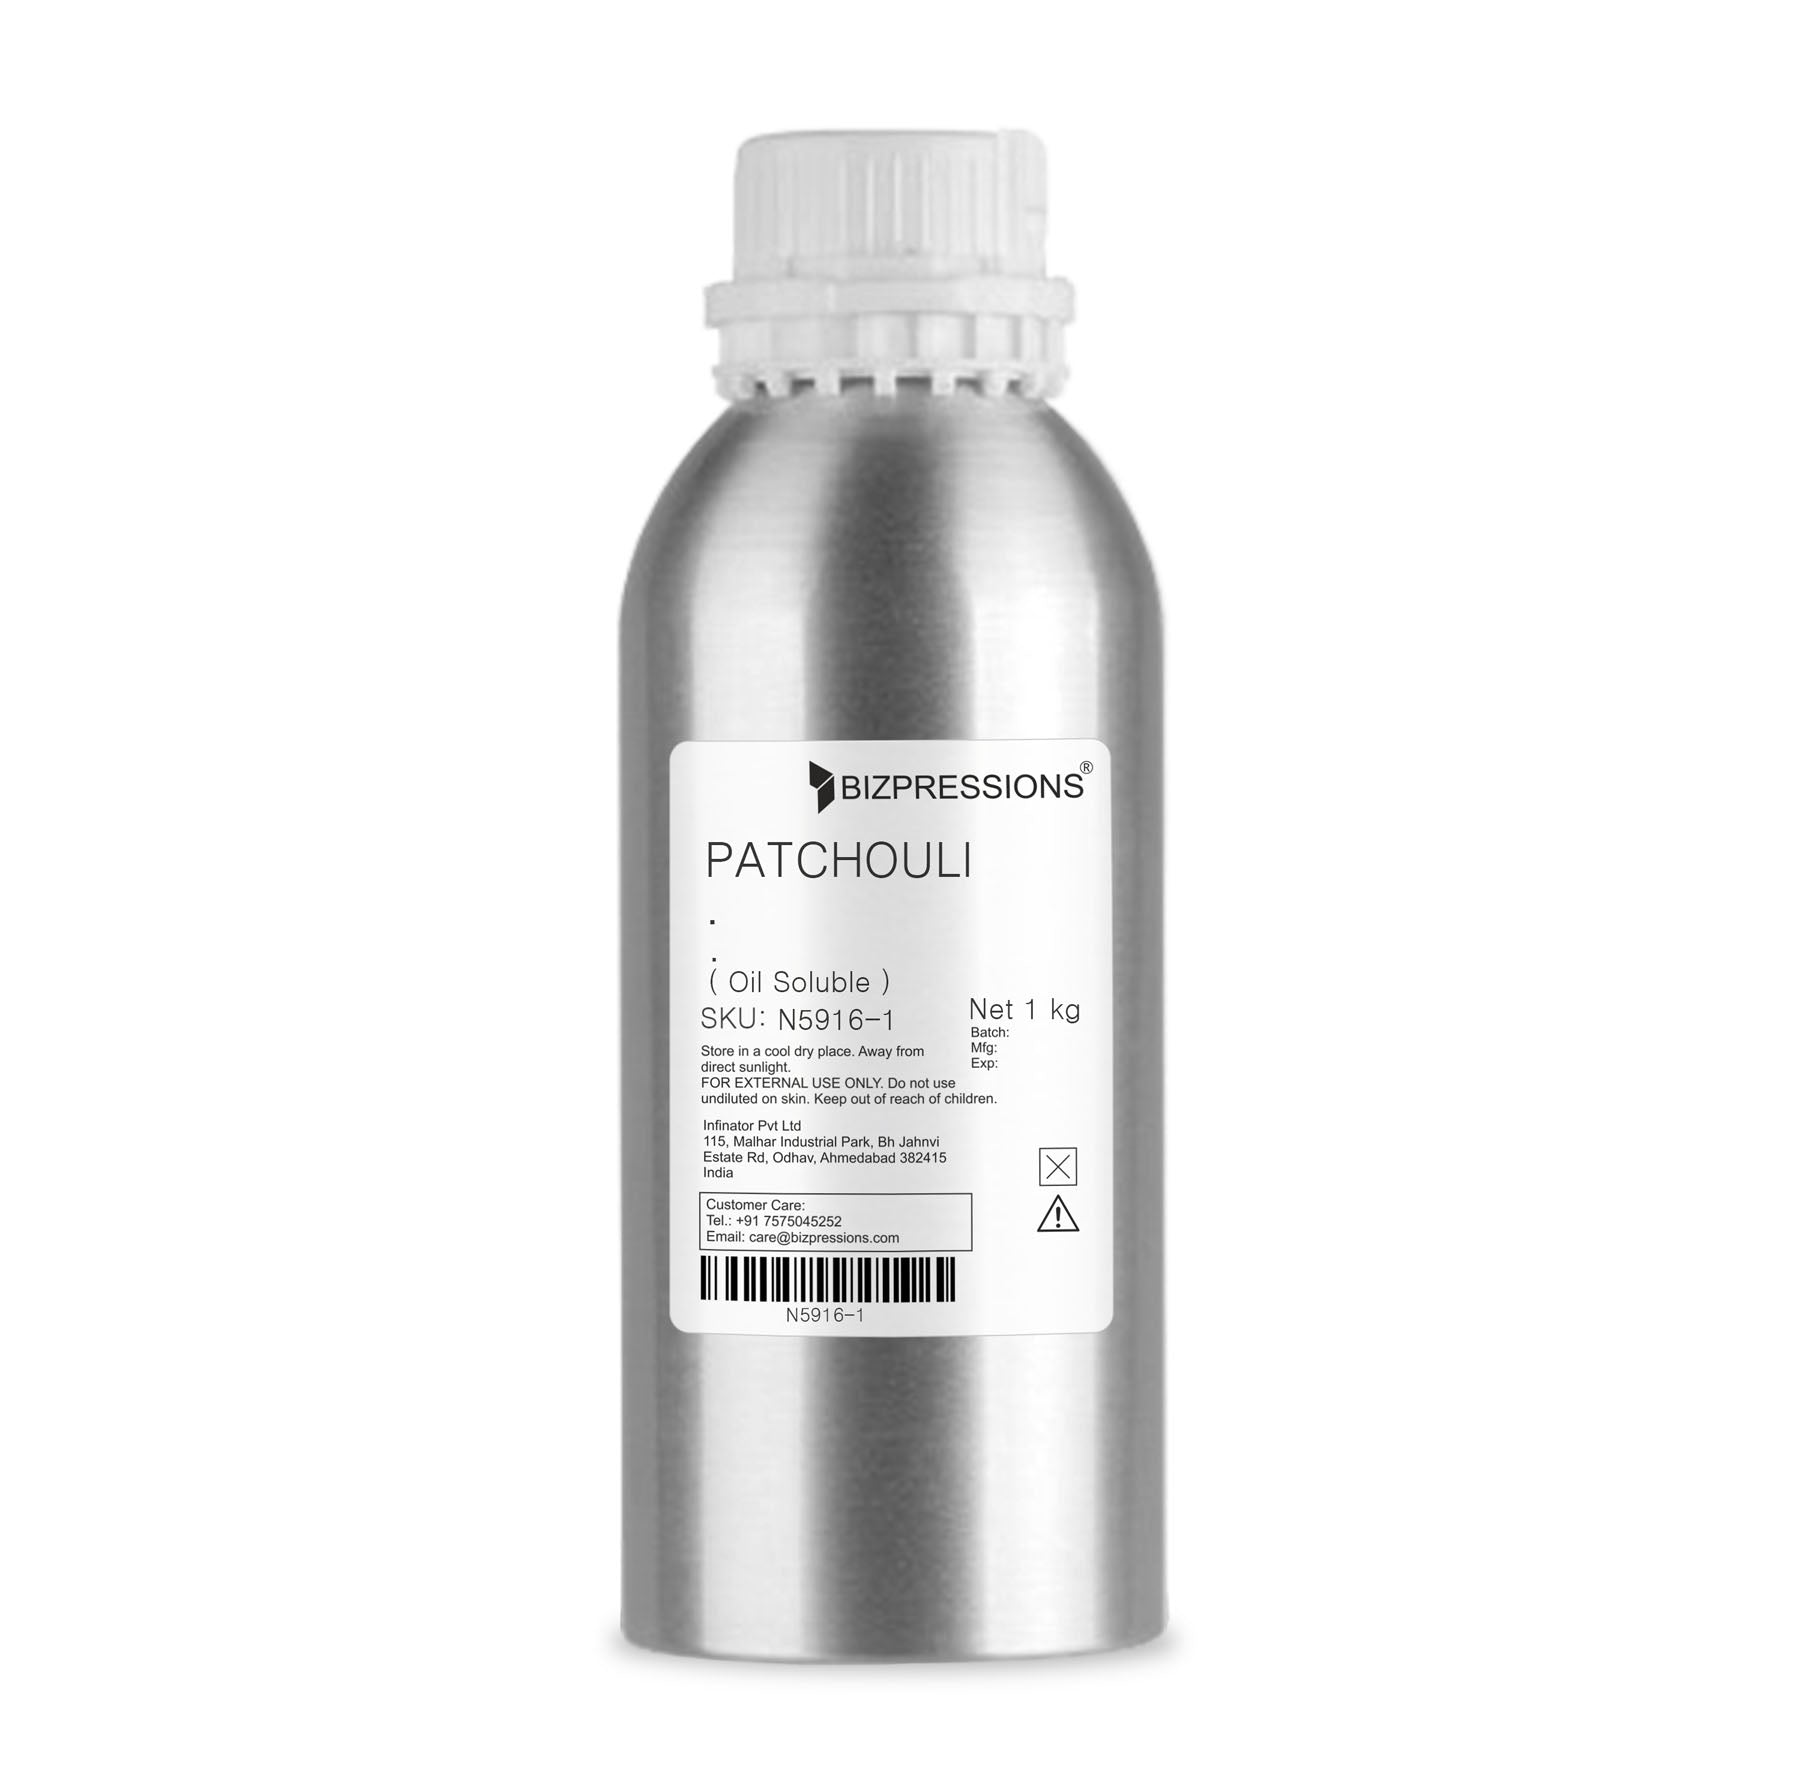 PATCHOULI FRAGRANCE - Fragrance ( Oil Soluble ) - 1 kg